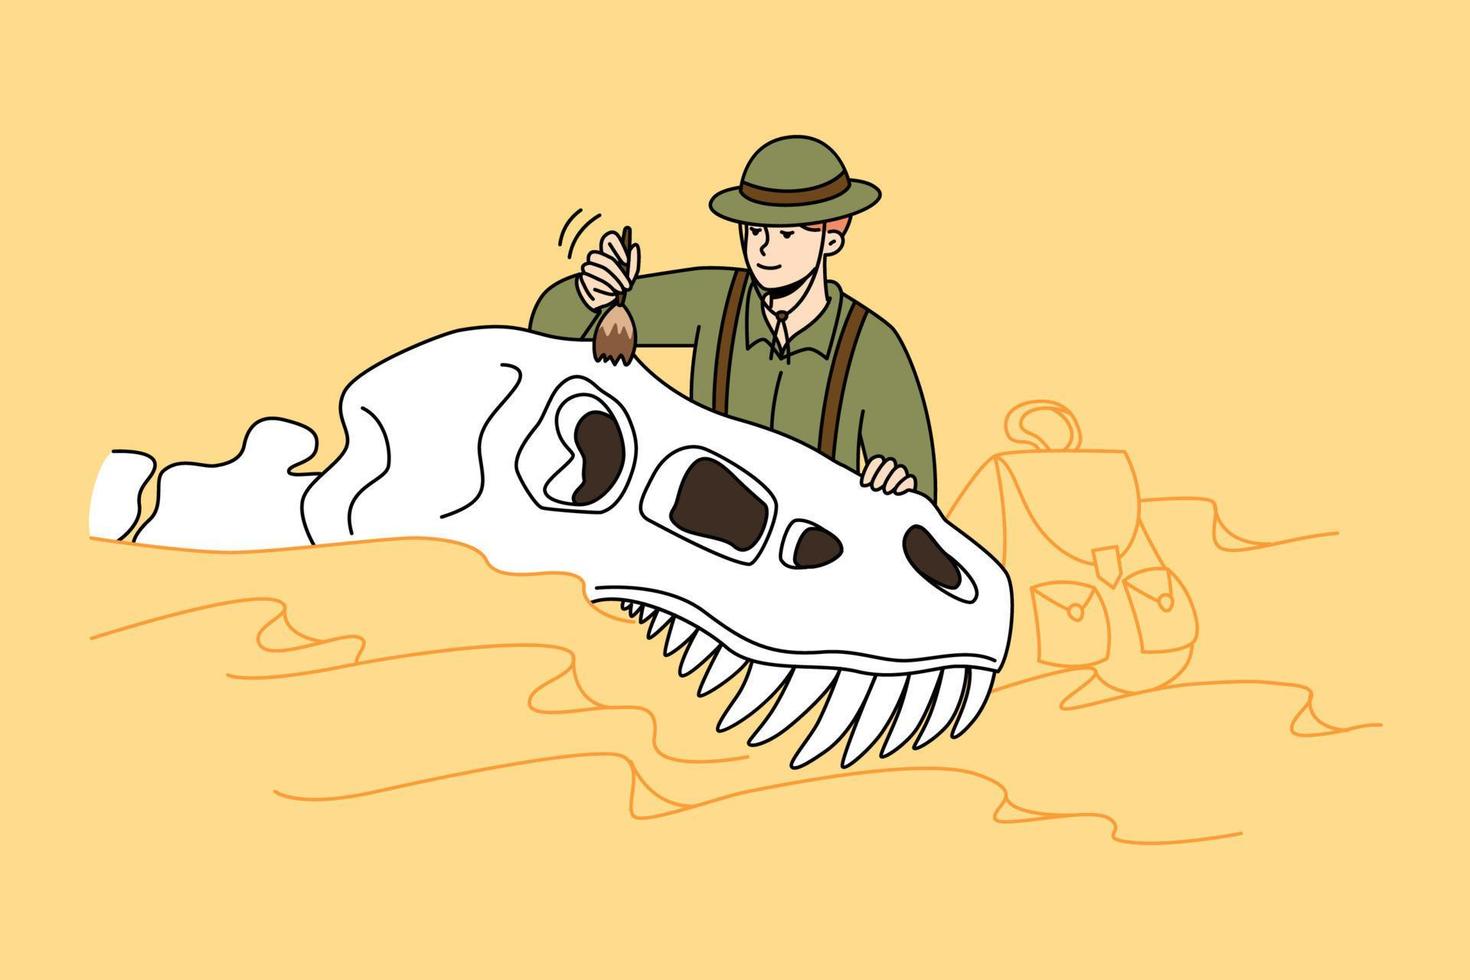 Paläontologe untersucht Dinosaurierreste an archäologischer Stätte. mann wissenschaftler, der mit alten tierausgrabungen arbeitet. Paläontologie und Wissenschaftler. Vektor-Illustration. vektor